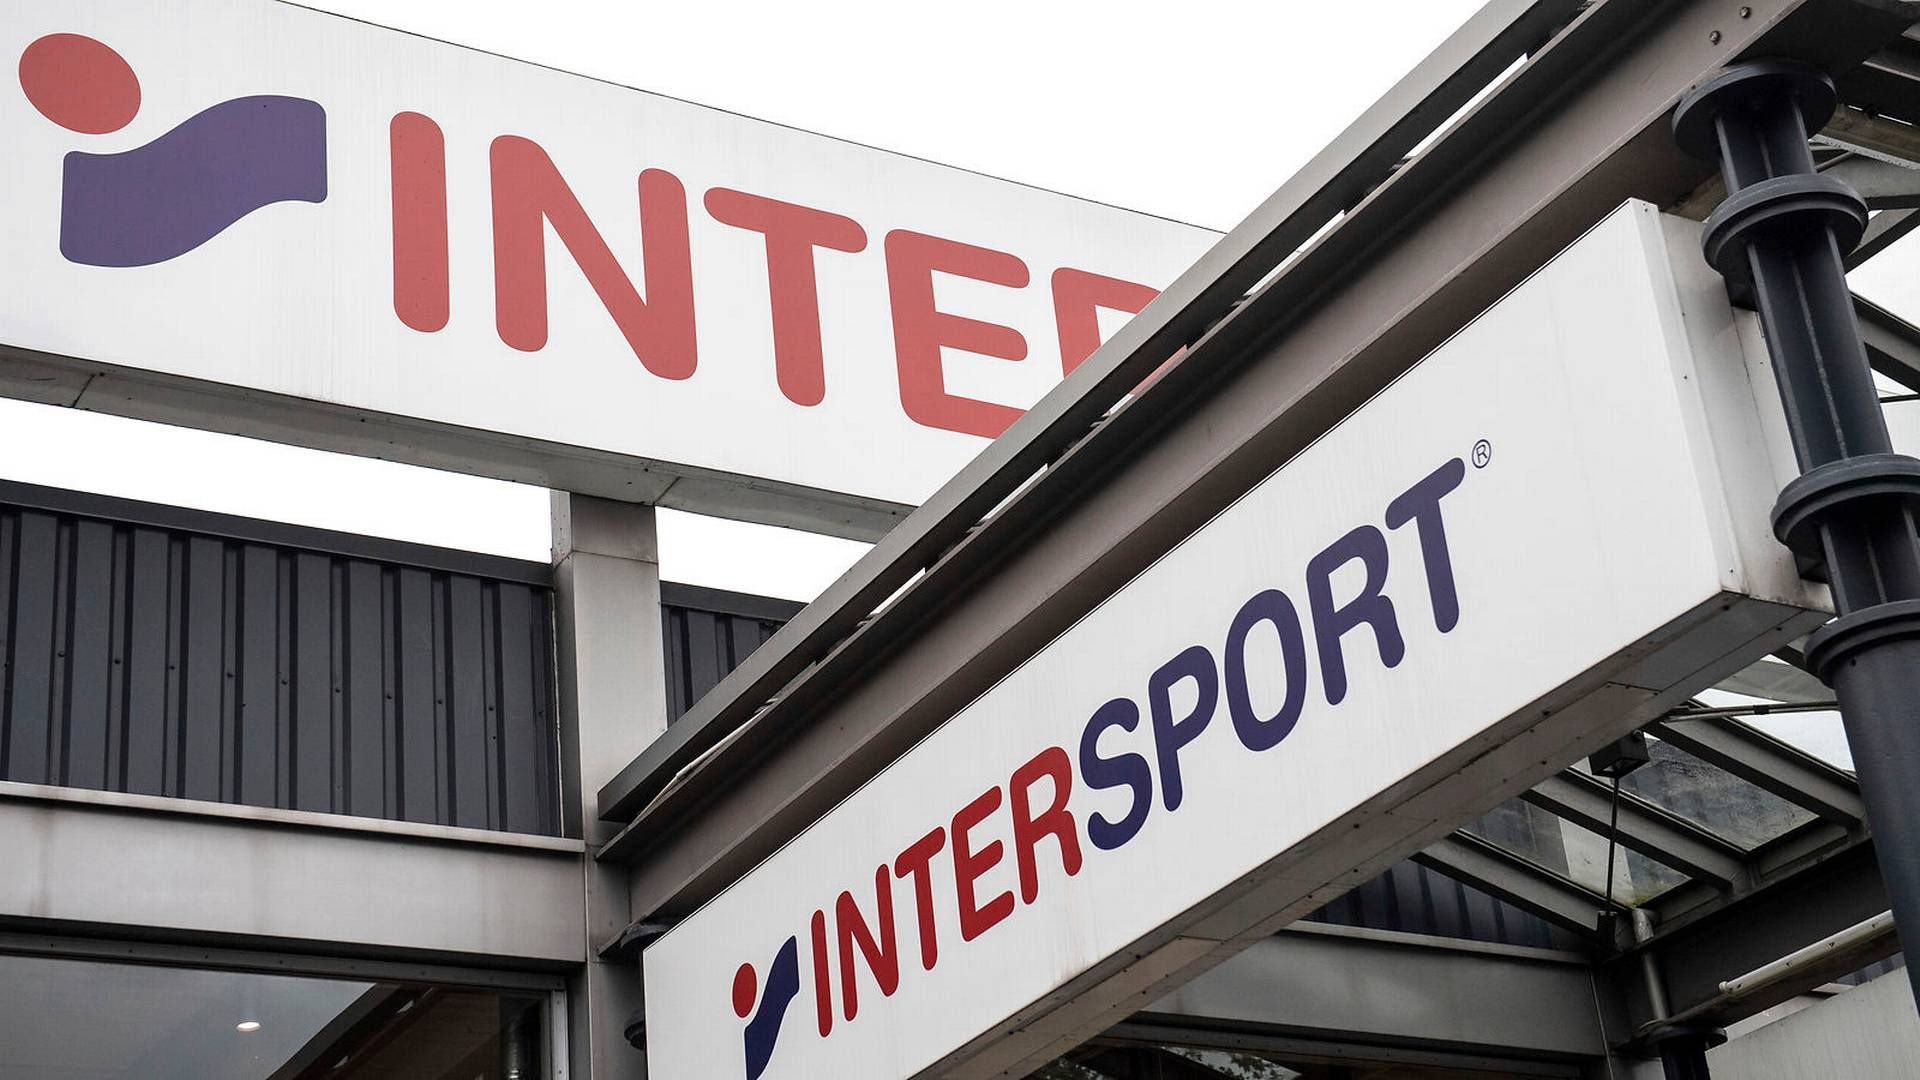 Intersport i Danmark har siden 1968 været en del af Intersport International Corporation, som er til stede i 42 lande. | Foto: Bernd Thissen